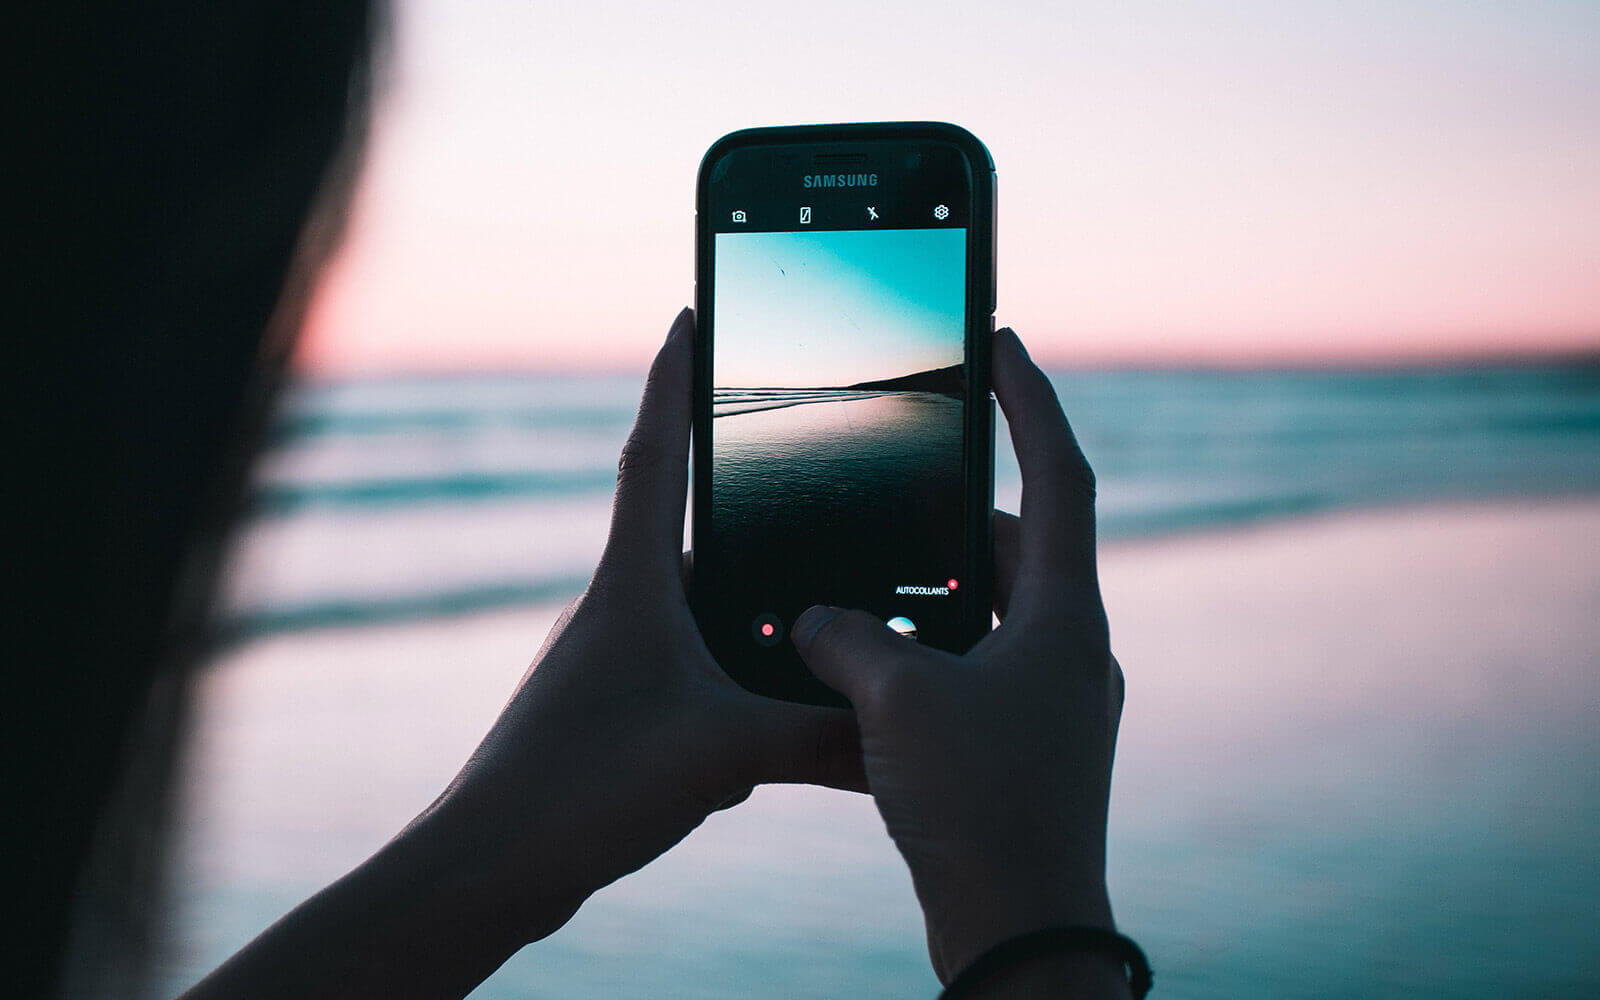 24 Fototipps für bessere Handy-Fotos – Teil 1 – Rahmenbedingungen, Handhabung und Technik